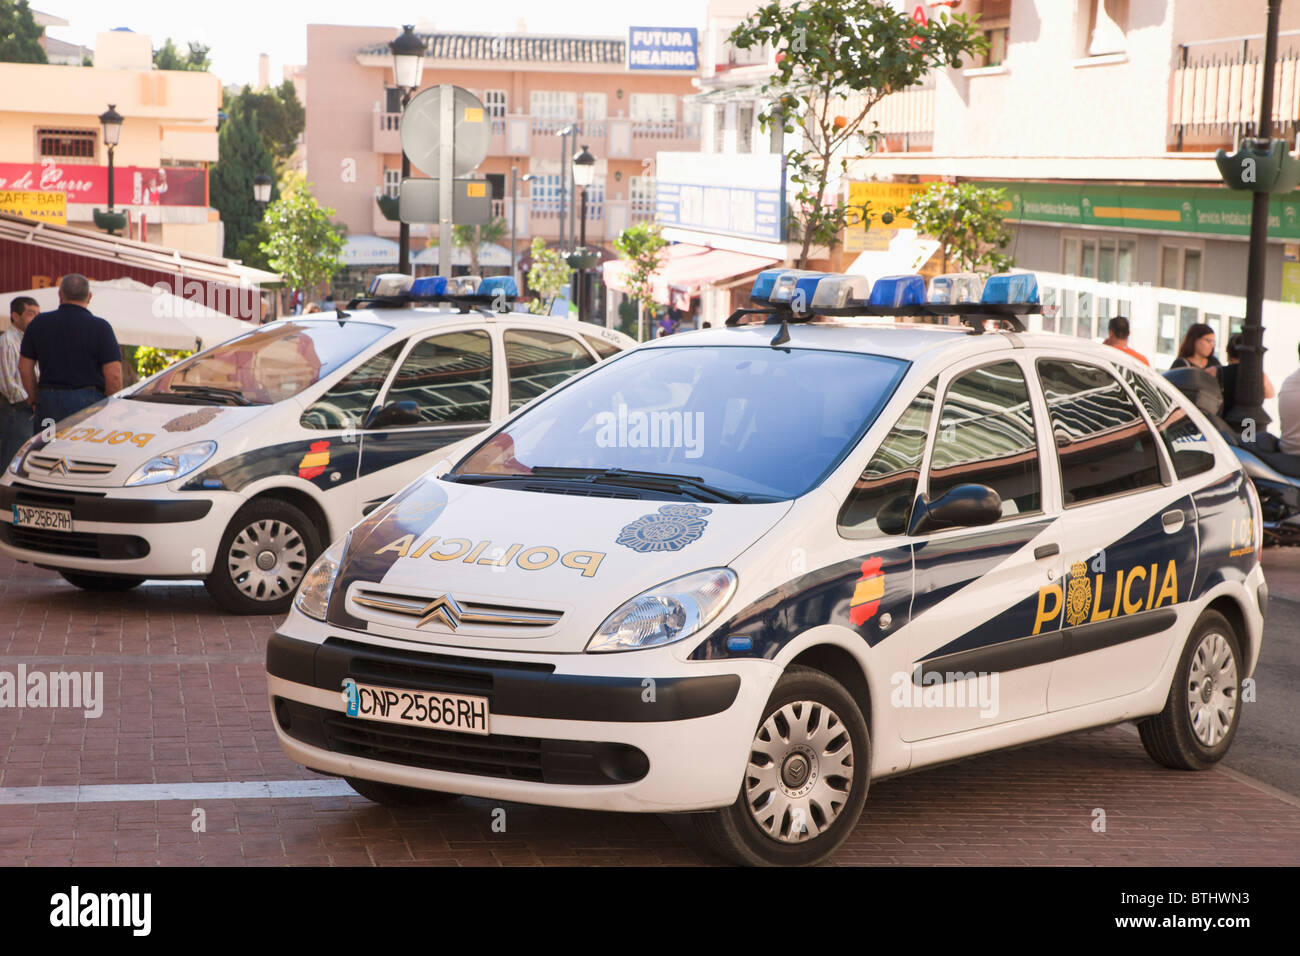 Policia Nacional Autos in Arroyo De La Miel, Provinz Malaga, Spanien. Nationale Polizei-Autos. Stockfoto